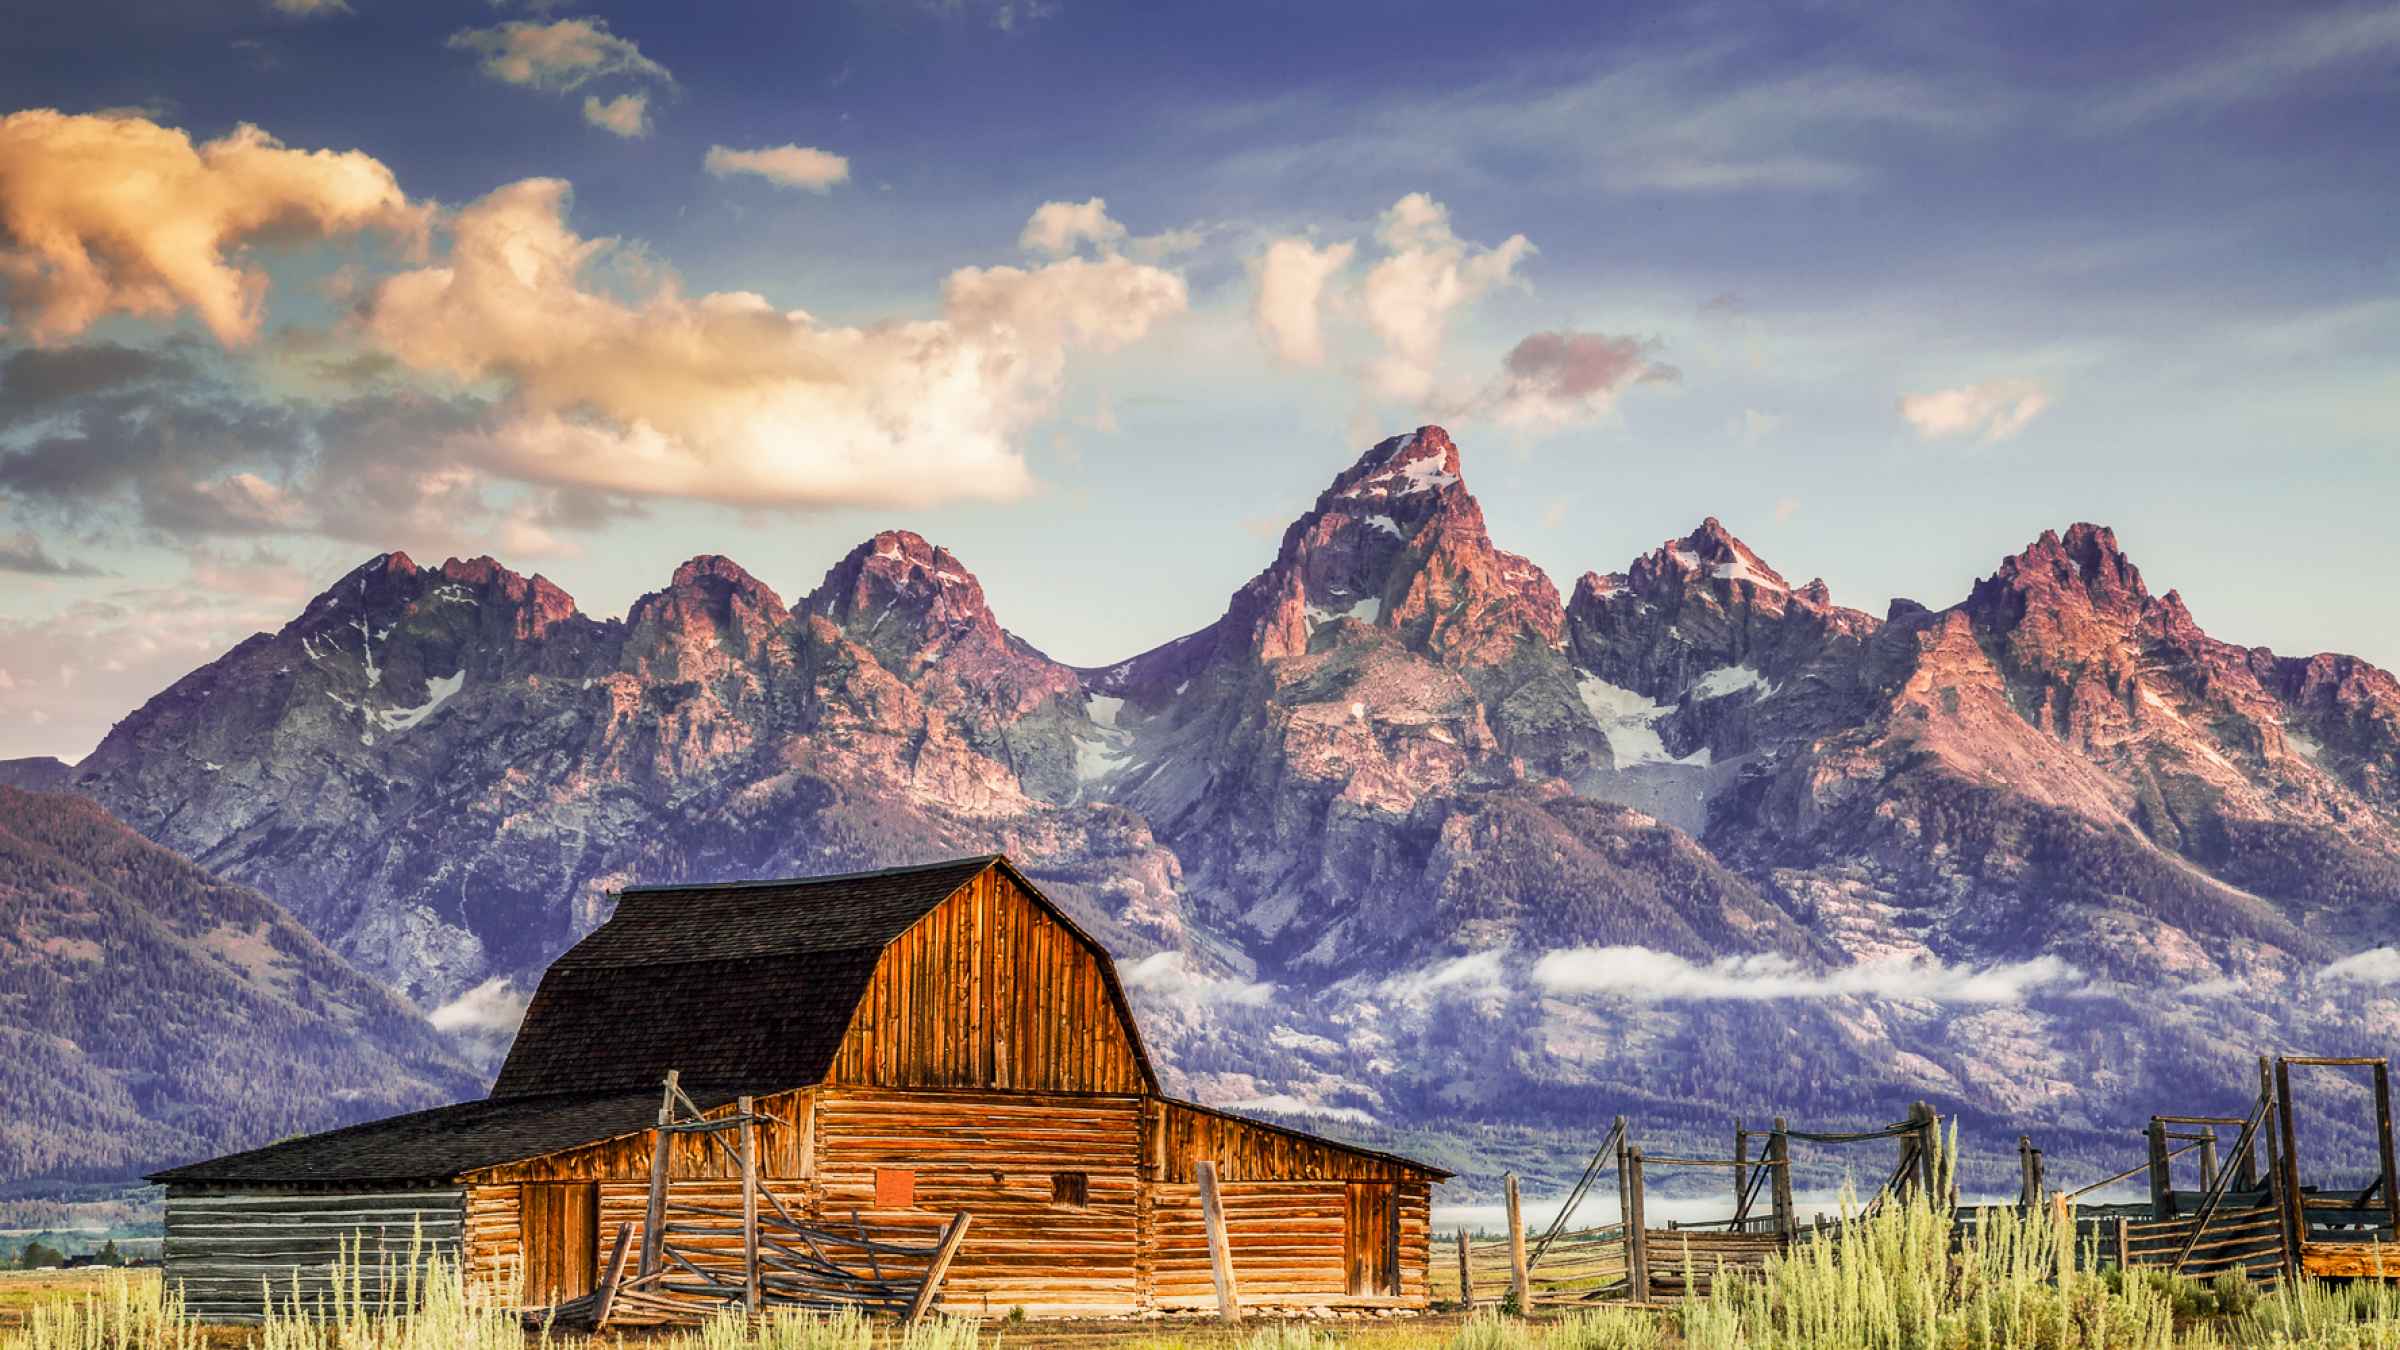 Teton i Wyoming - Bestil billetter til dit besøg | GetYourGuide